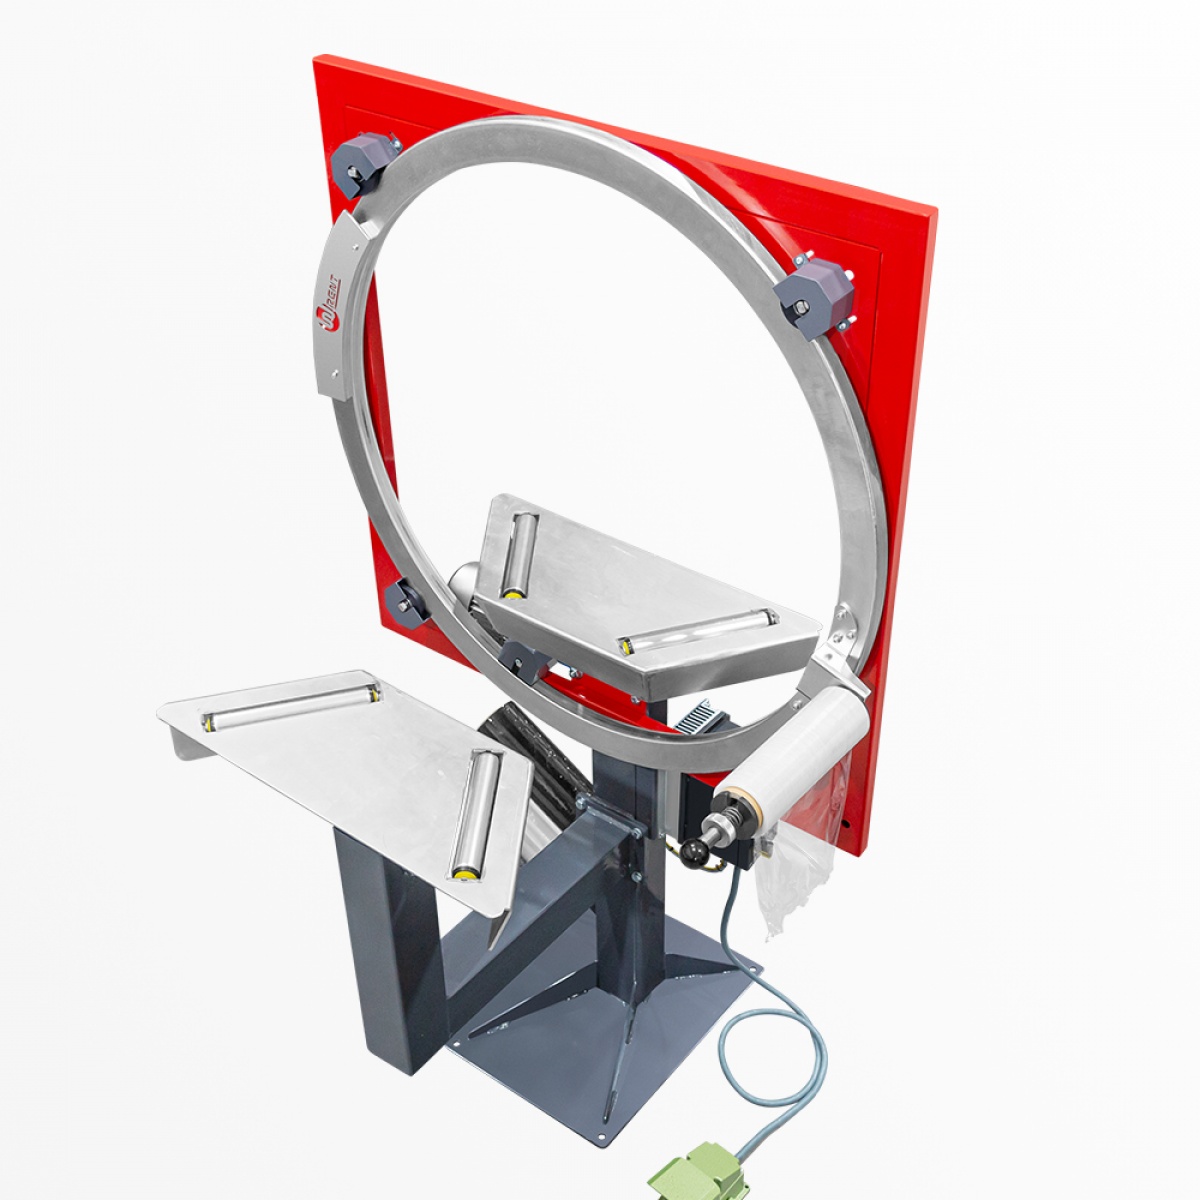 Wrapping Ring motorisierte Wickelmaschine zum Wickeln von Reifen und runden Gegenständen (WR1050T, WR1400T)